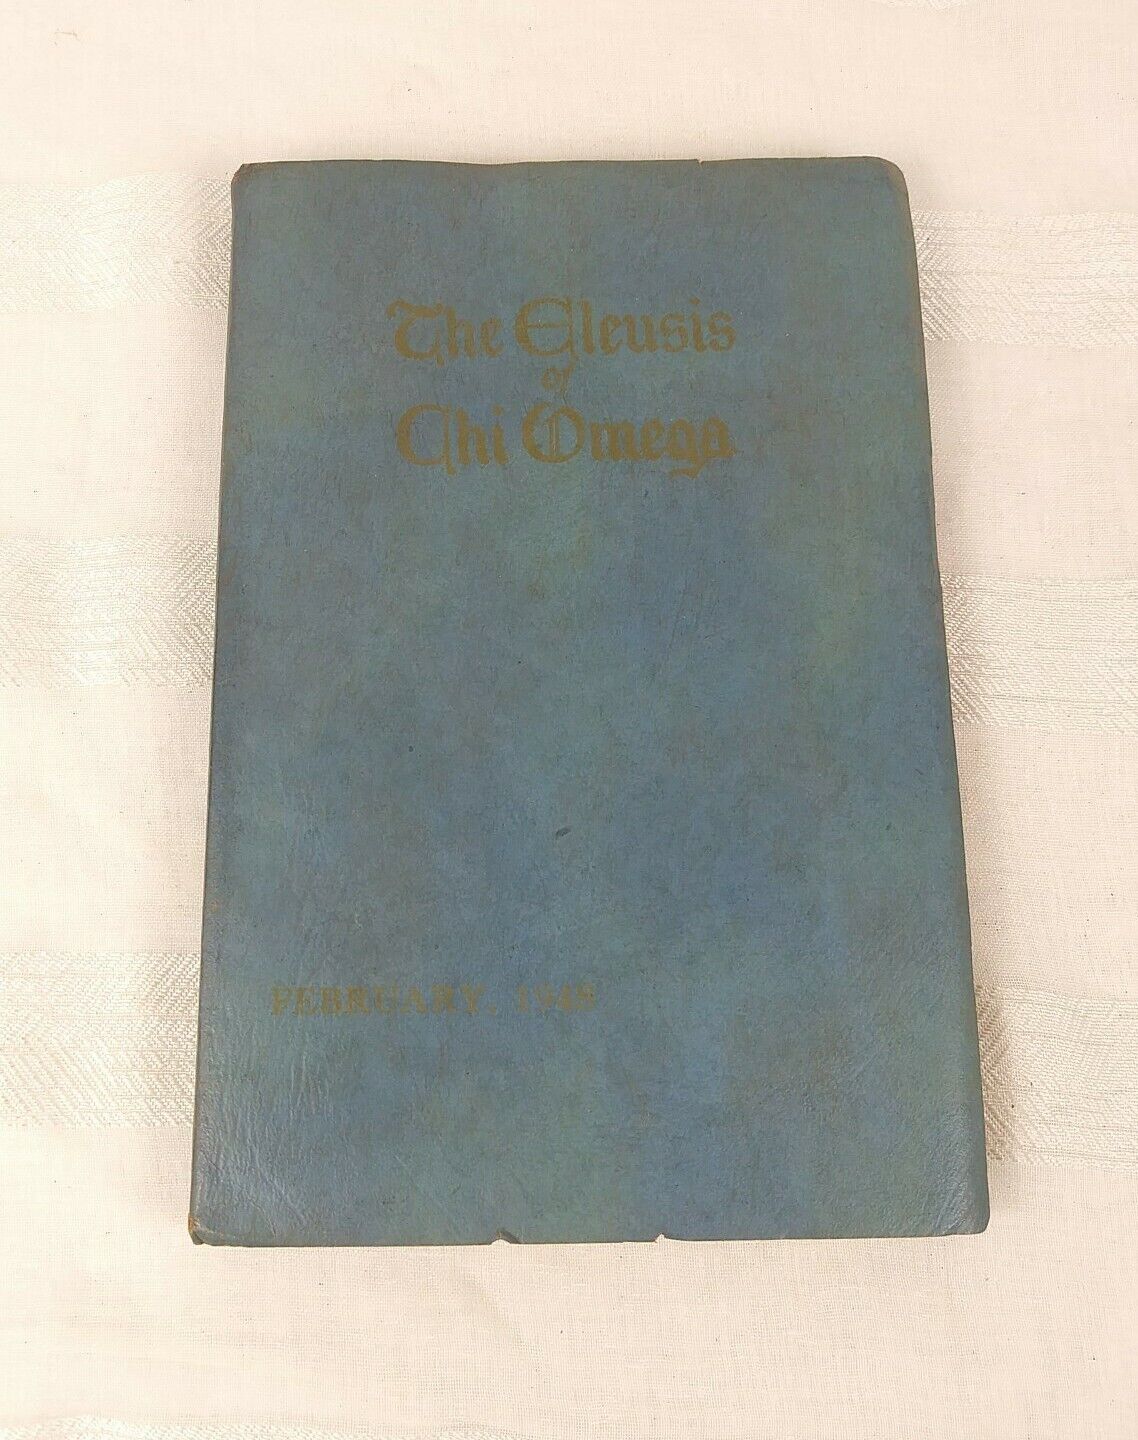 The Eleusis of Chi Omega 1948 Book February 1948 Chi Omega Book 